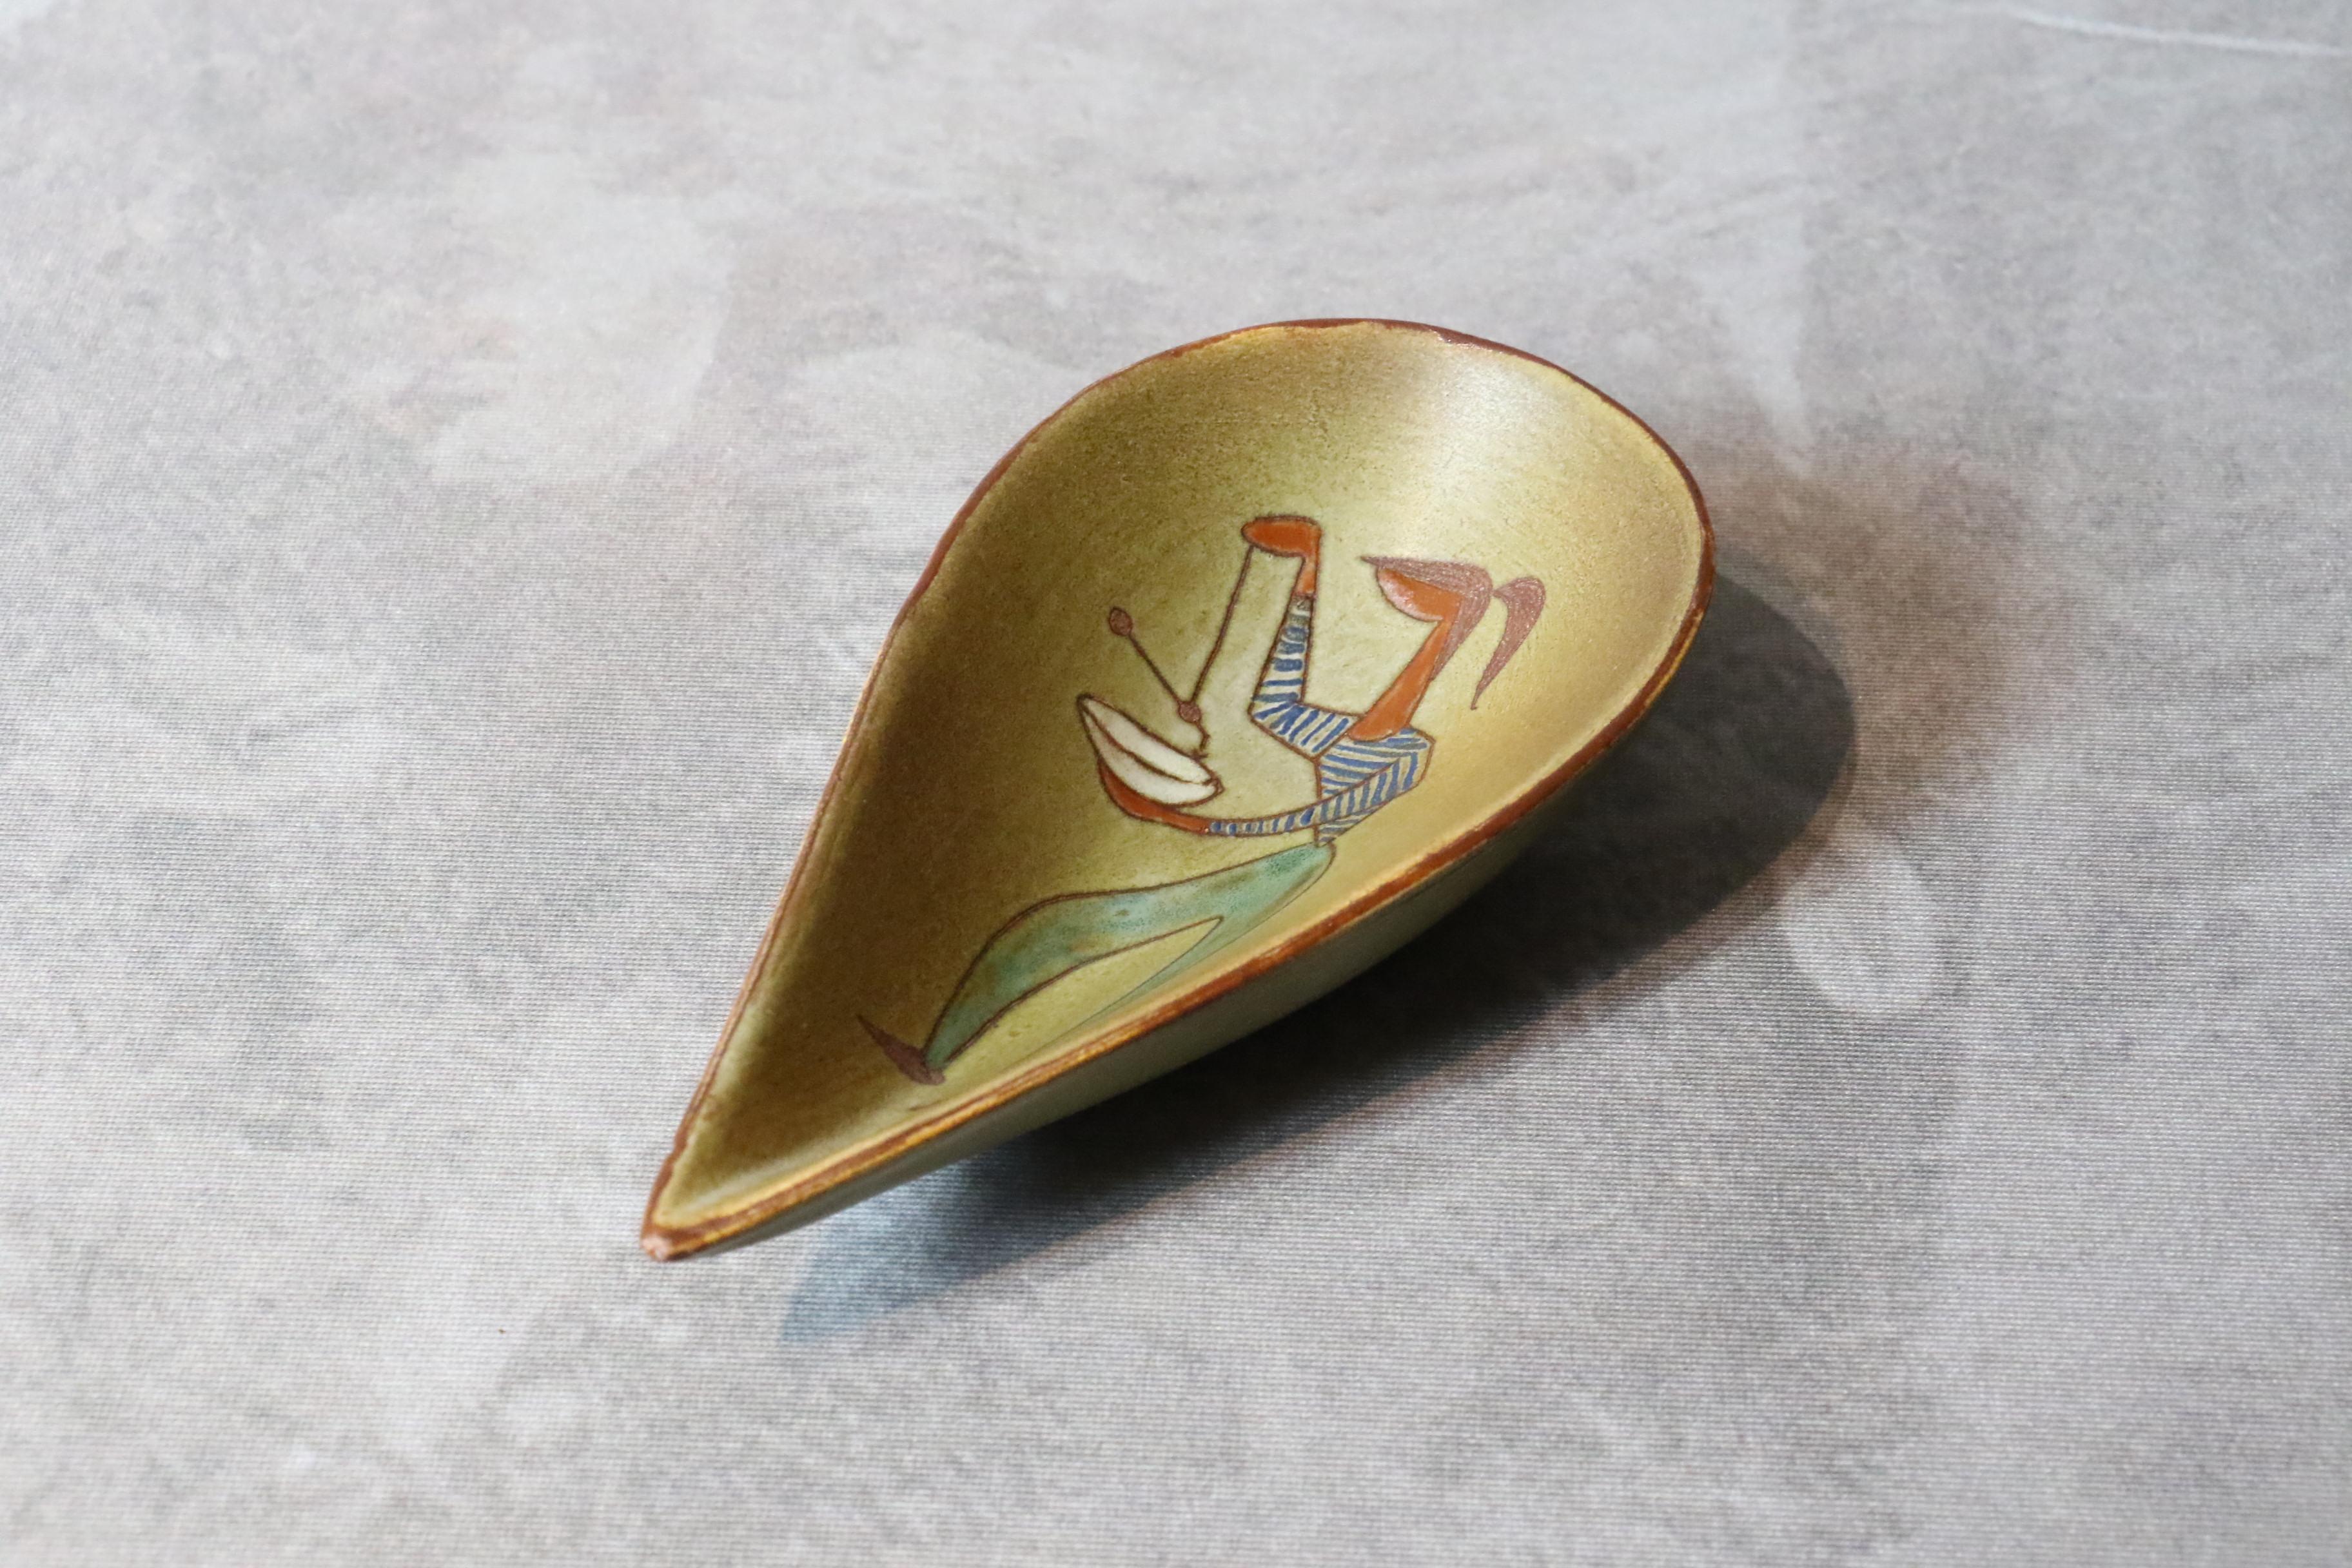 Tasse en céramique blanche française du 20e siècle par René Maurel, années 1970.

Cette tasse en céramique est finement décorée d'une figure féminine. Le bol est émaillé d'un ton ocre et de bordures brunes. 
Elle est signée ci-dessous. 
Il est